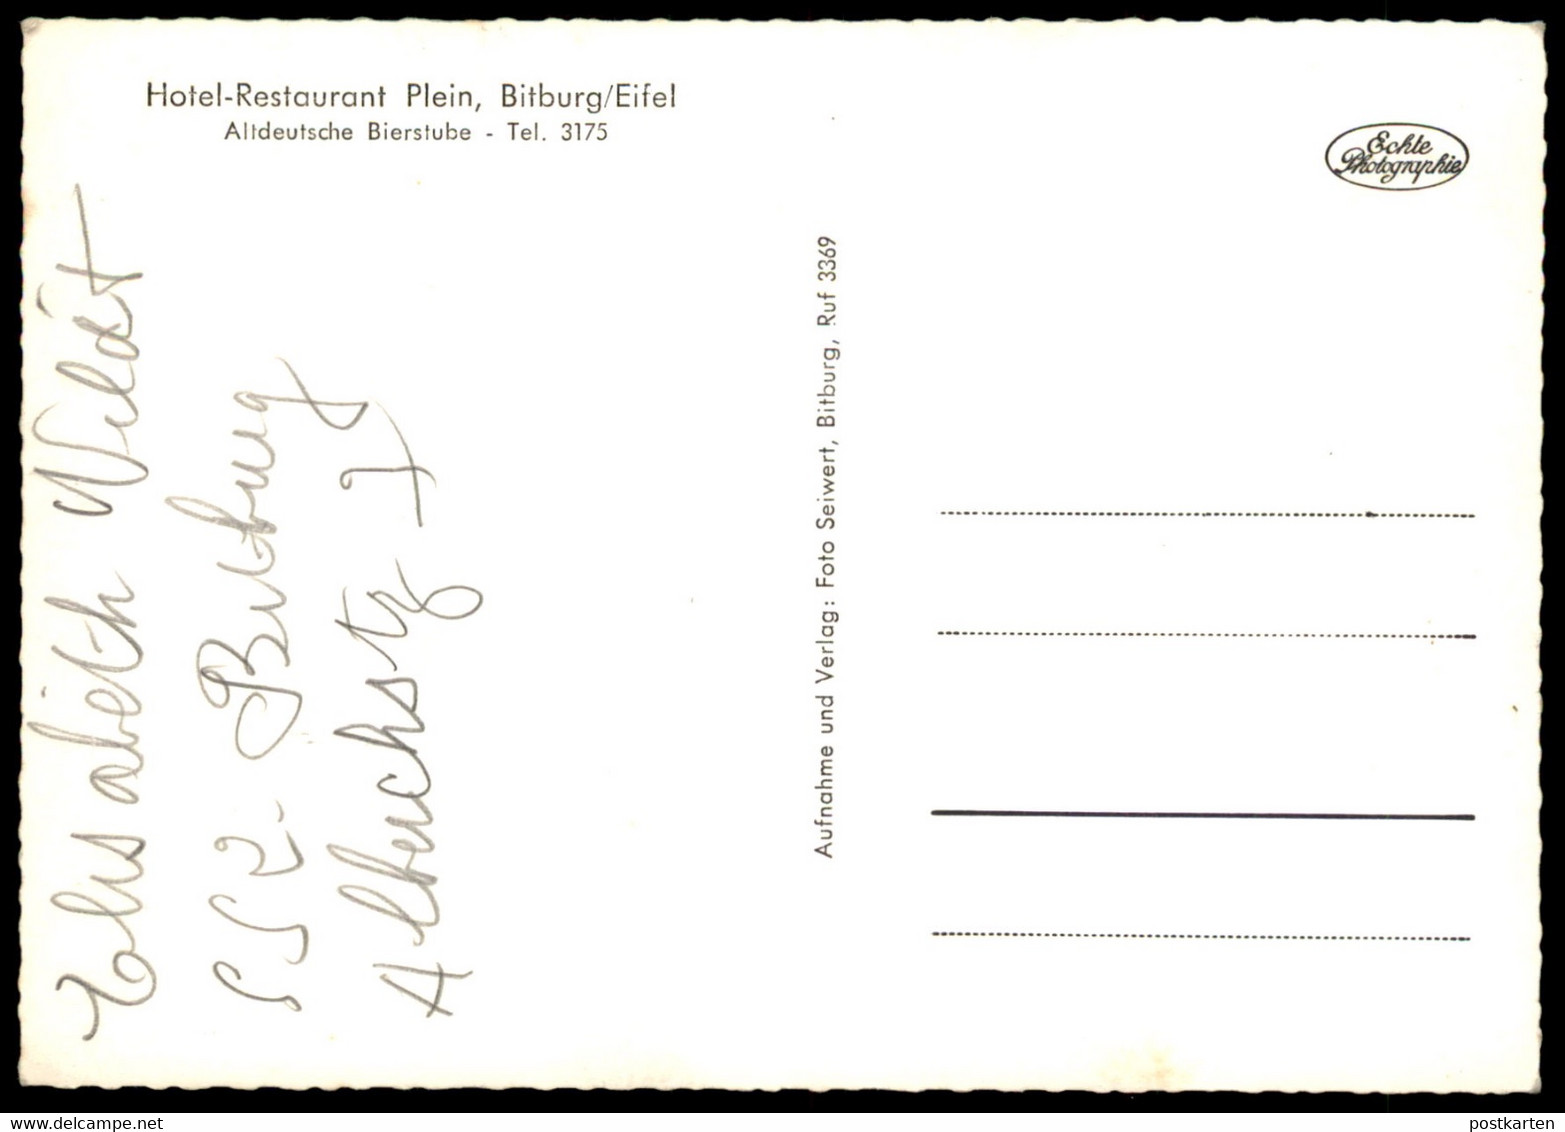 ALTE POSTKARTE BITBURG EIFEL HOTEL RESTAURANT PLEIN ALTDEUTSCHE BIERSTUBE THEKE Ansichtskarte AK Cpa Postcard - Bitburg